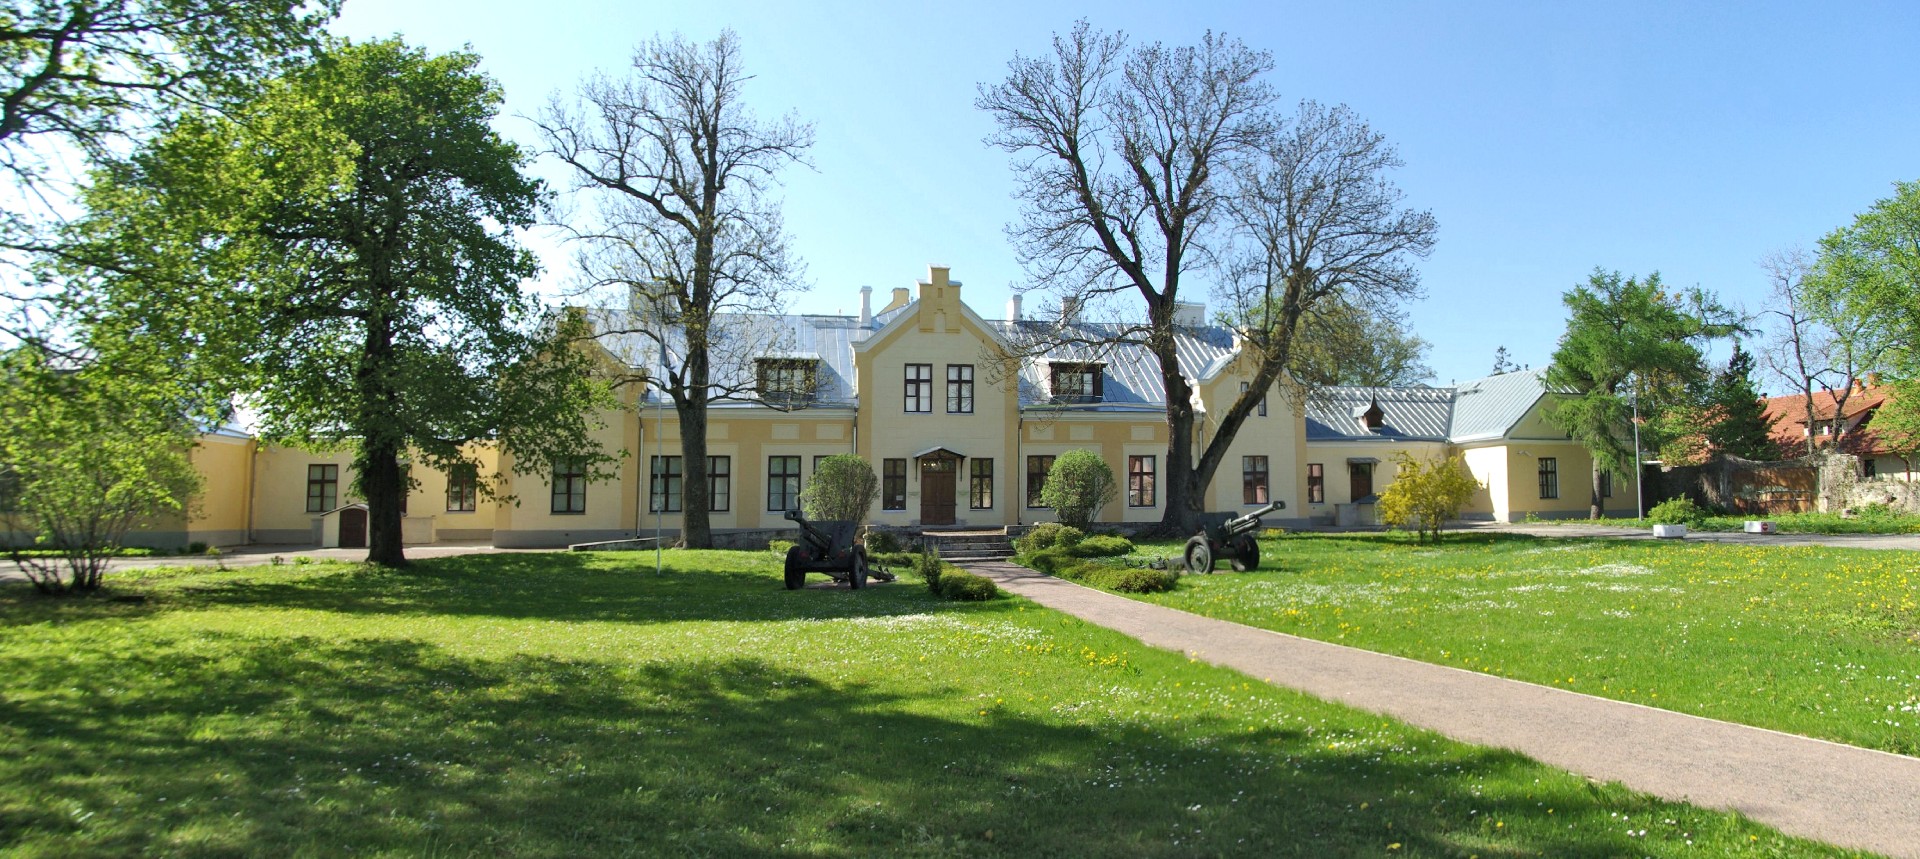 Estoński Muzeum Wojny (Eesti Sõjamuuseum). Foto: Ilme Parik (Wikipedia)